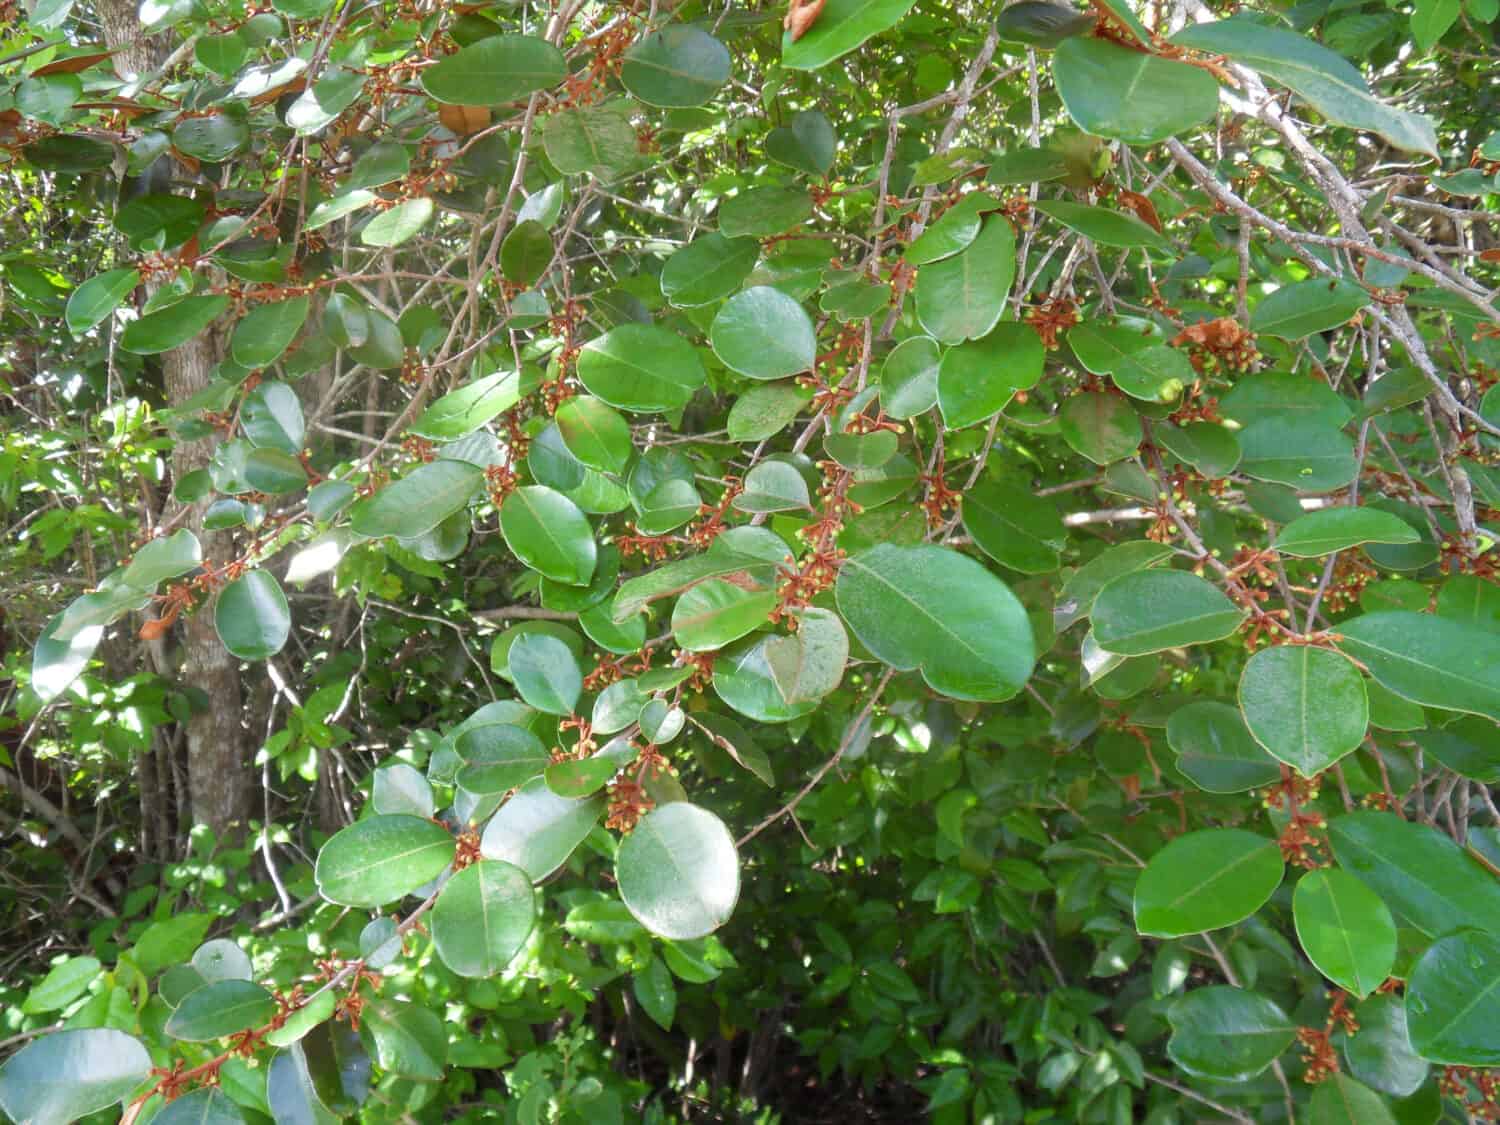 Branch of the satinleaf tree (Chrysophyllum oliviforme) with floral buds